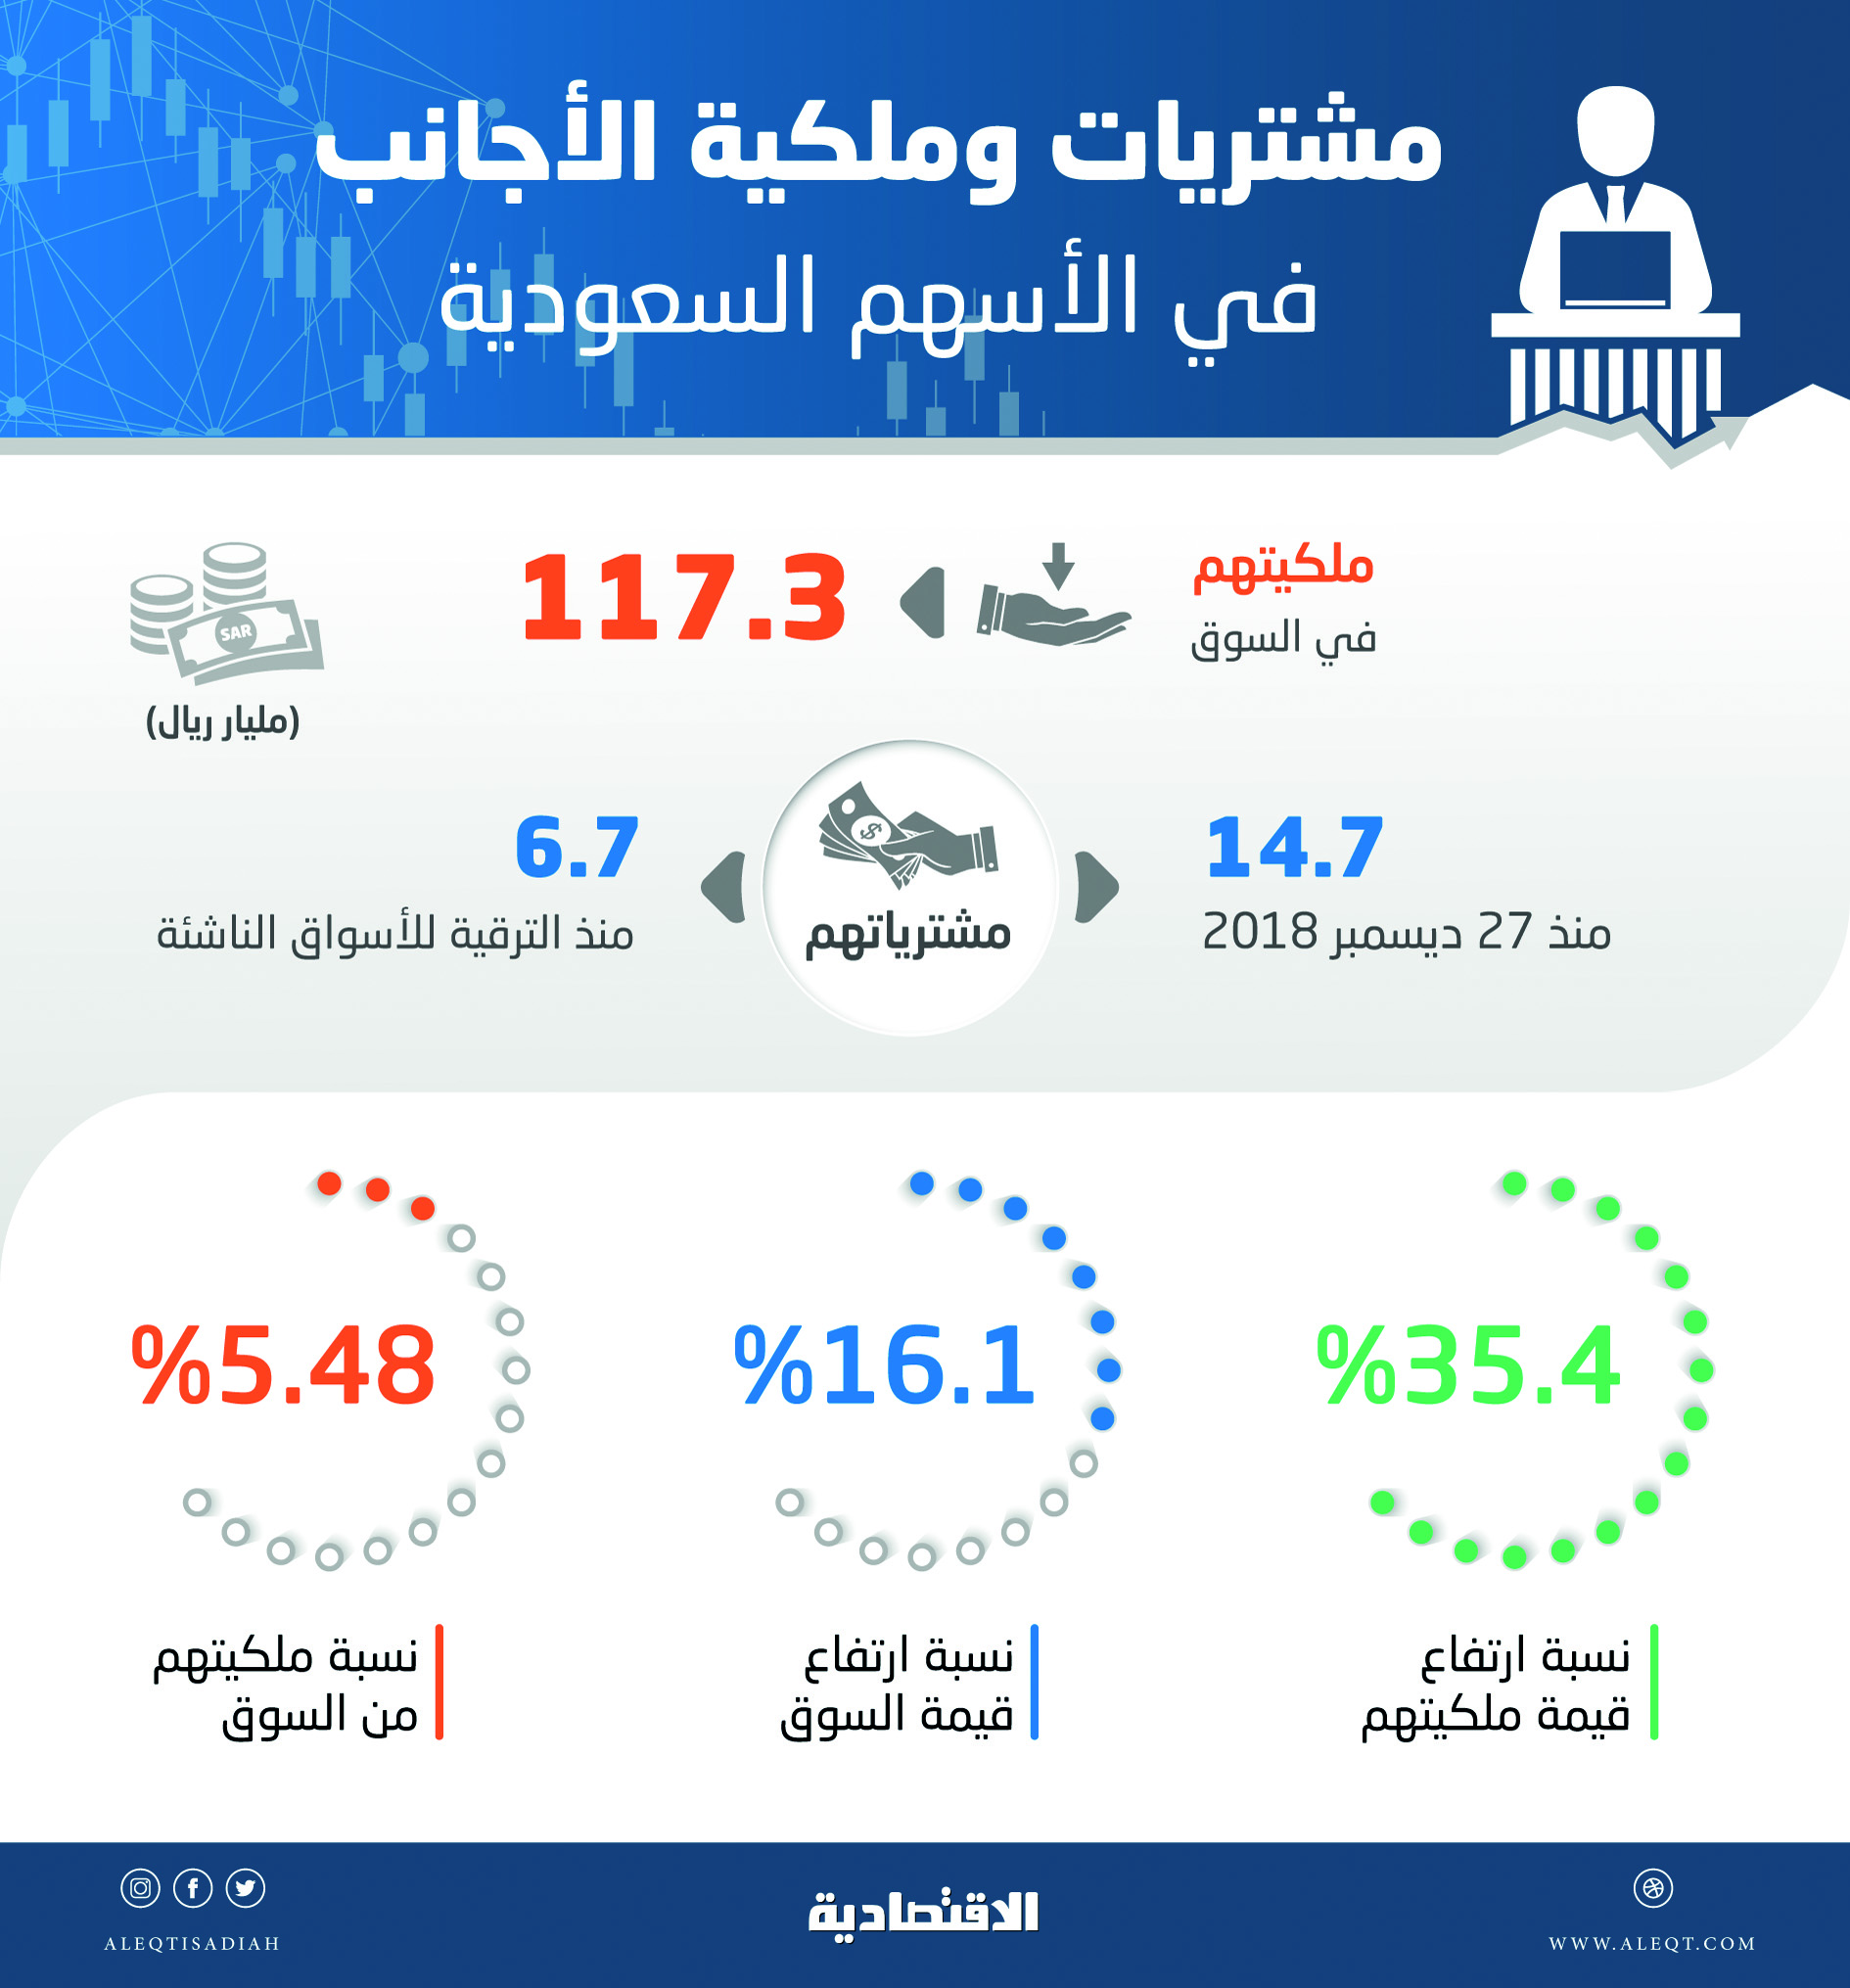 ملكية قياسية للأجانب في الأسهم السعودية بـ 117.3 مليار ريال .. تشكل 5.5 % من السوق   صحيفة الاقتصادية